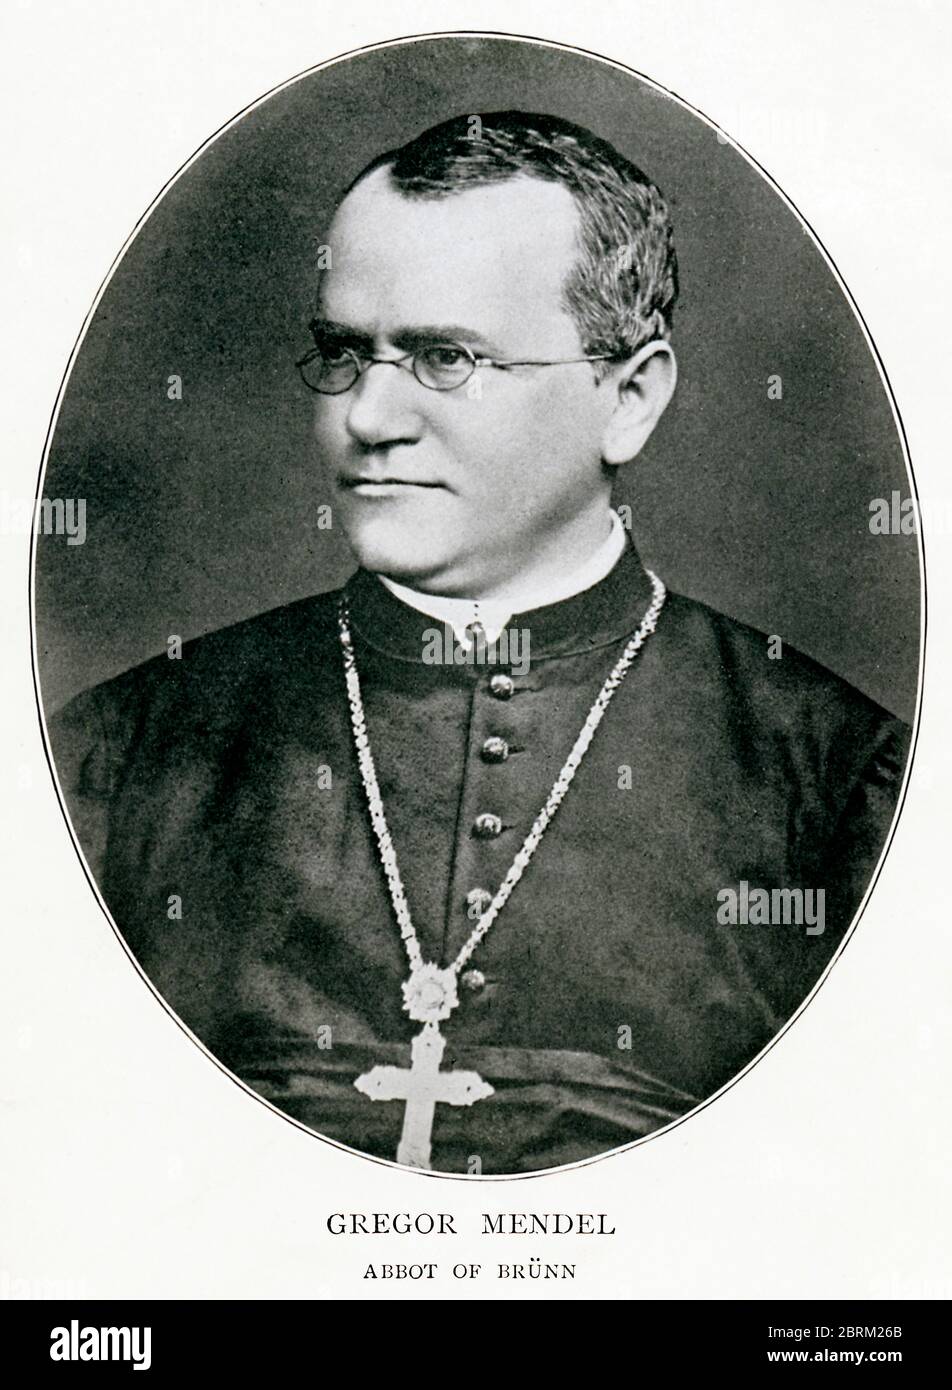 Gregor Mendel, Porträtfoto des tschechischen Wissenschaftlers um 1855, Augustiner-Mönch, Abt von Brünn und Begründer der modernen Genetik für seine Arbeit an Pflanzen Stockfoto